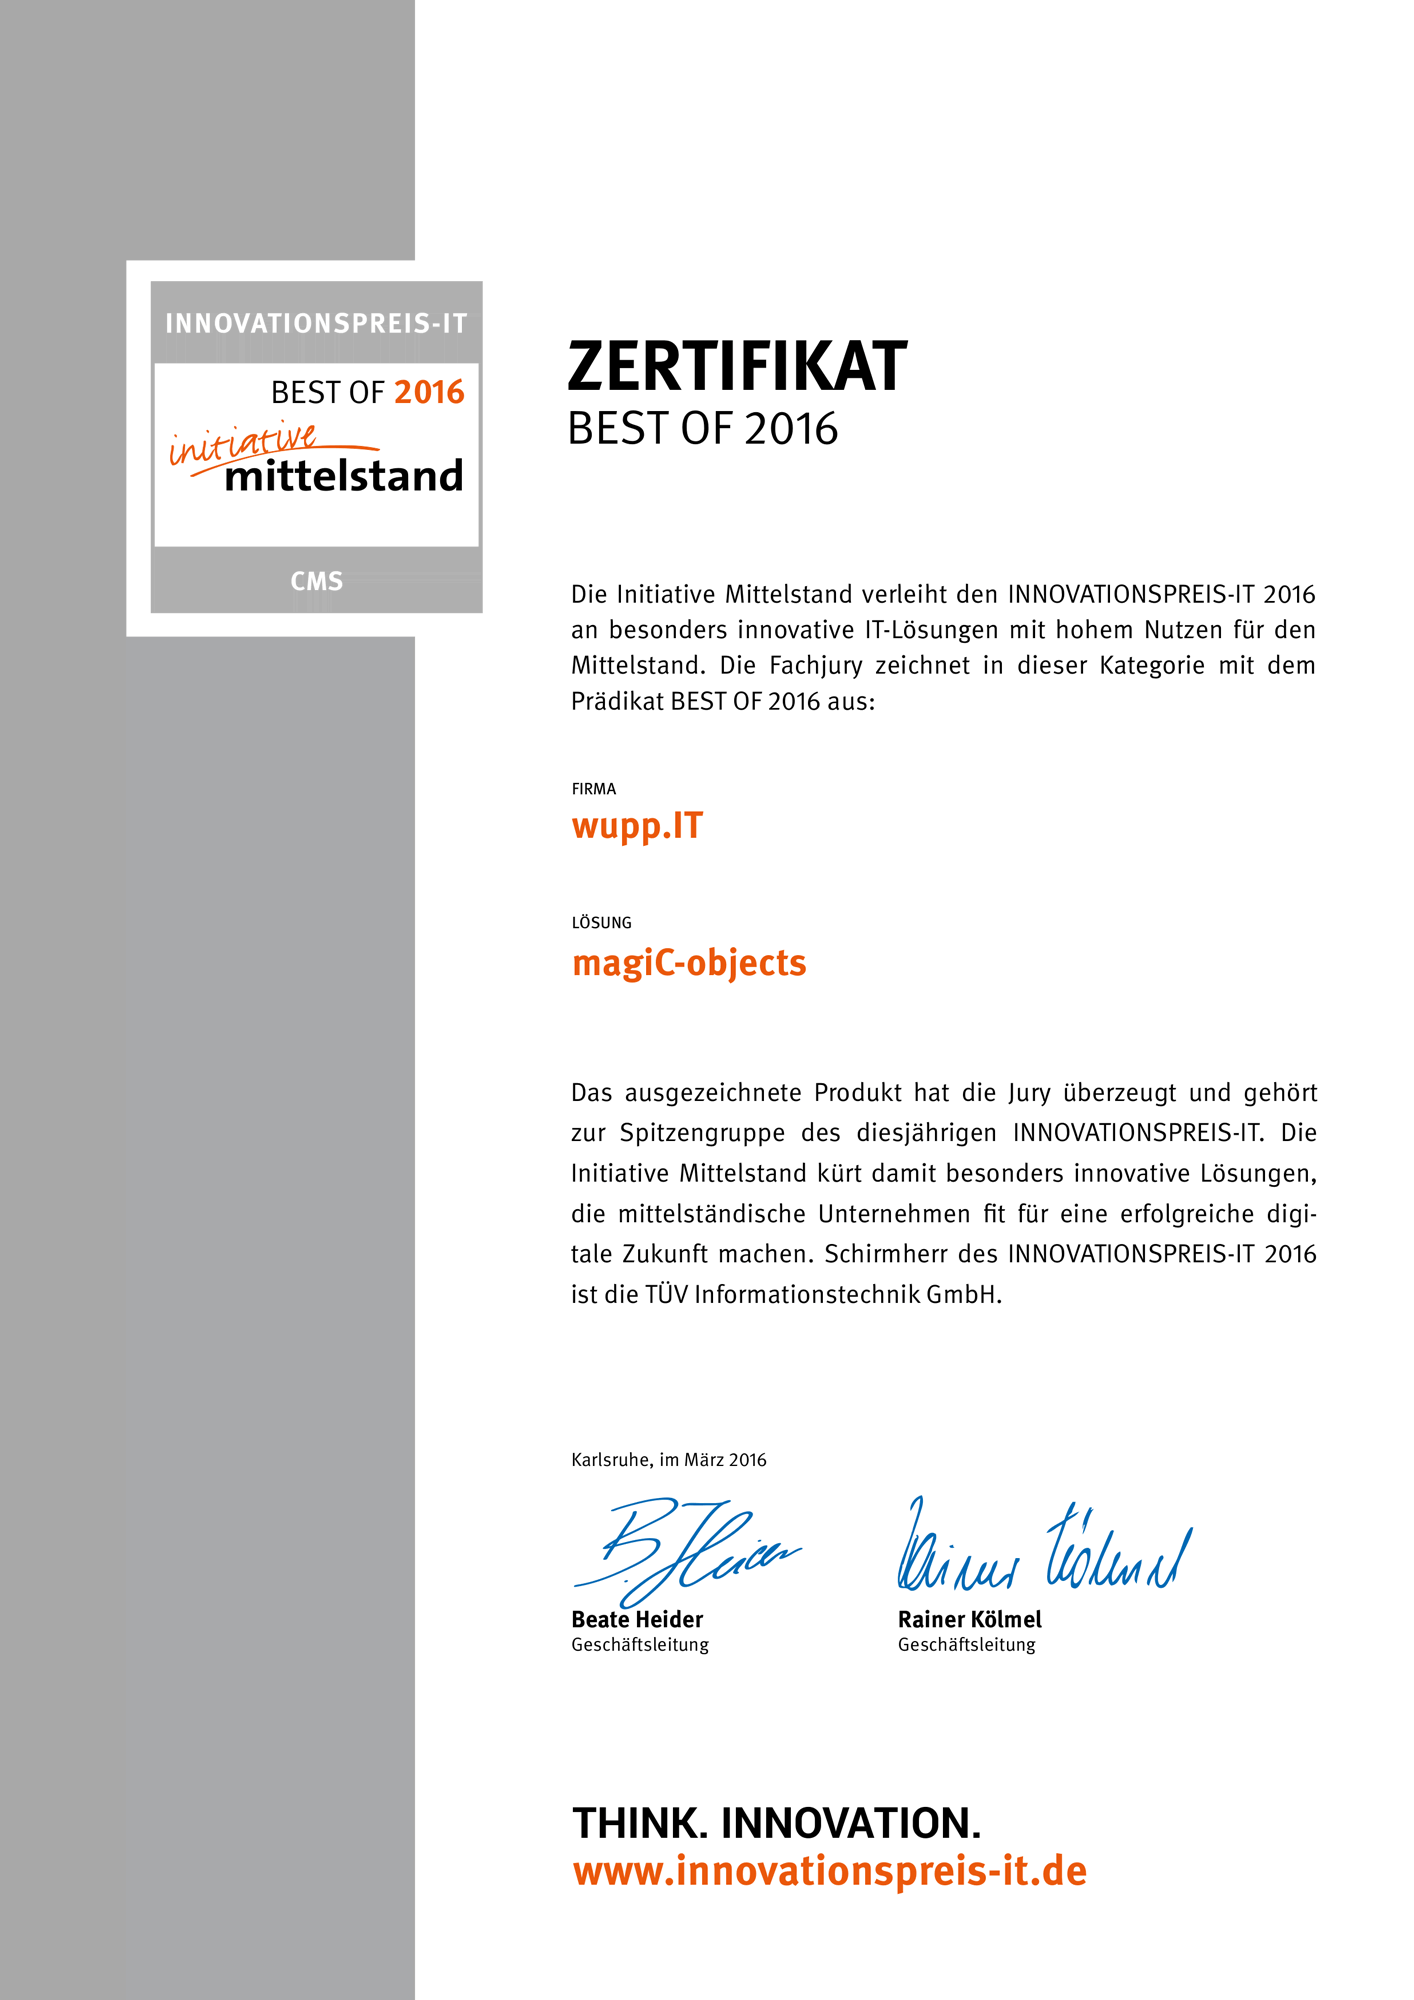 Zertifikat vom Innovationspreis-IT 2016 für unser Produkt magiC-objects